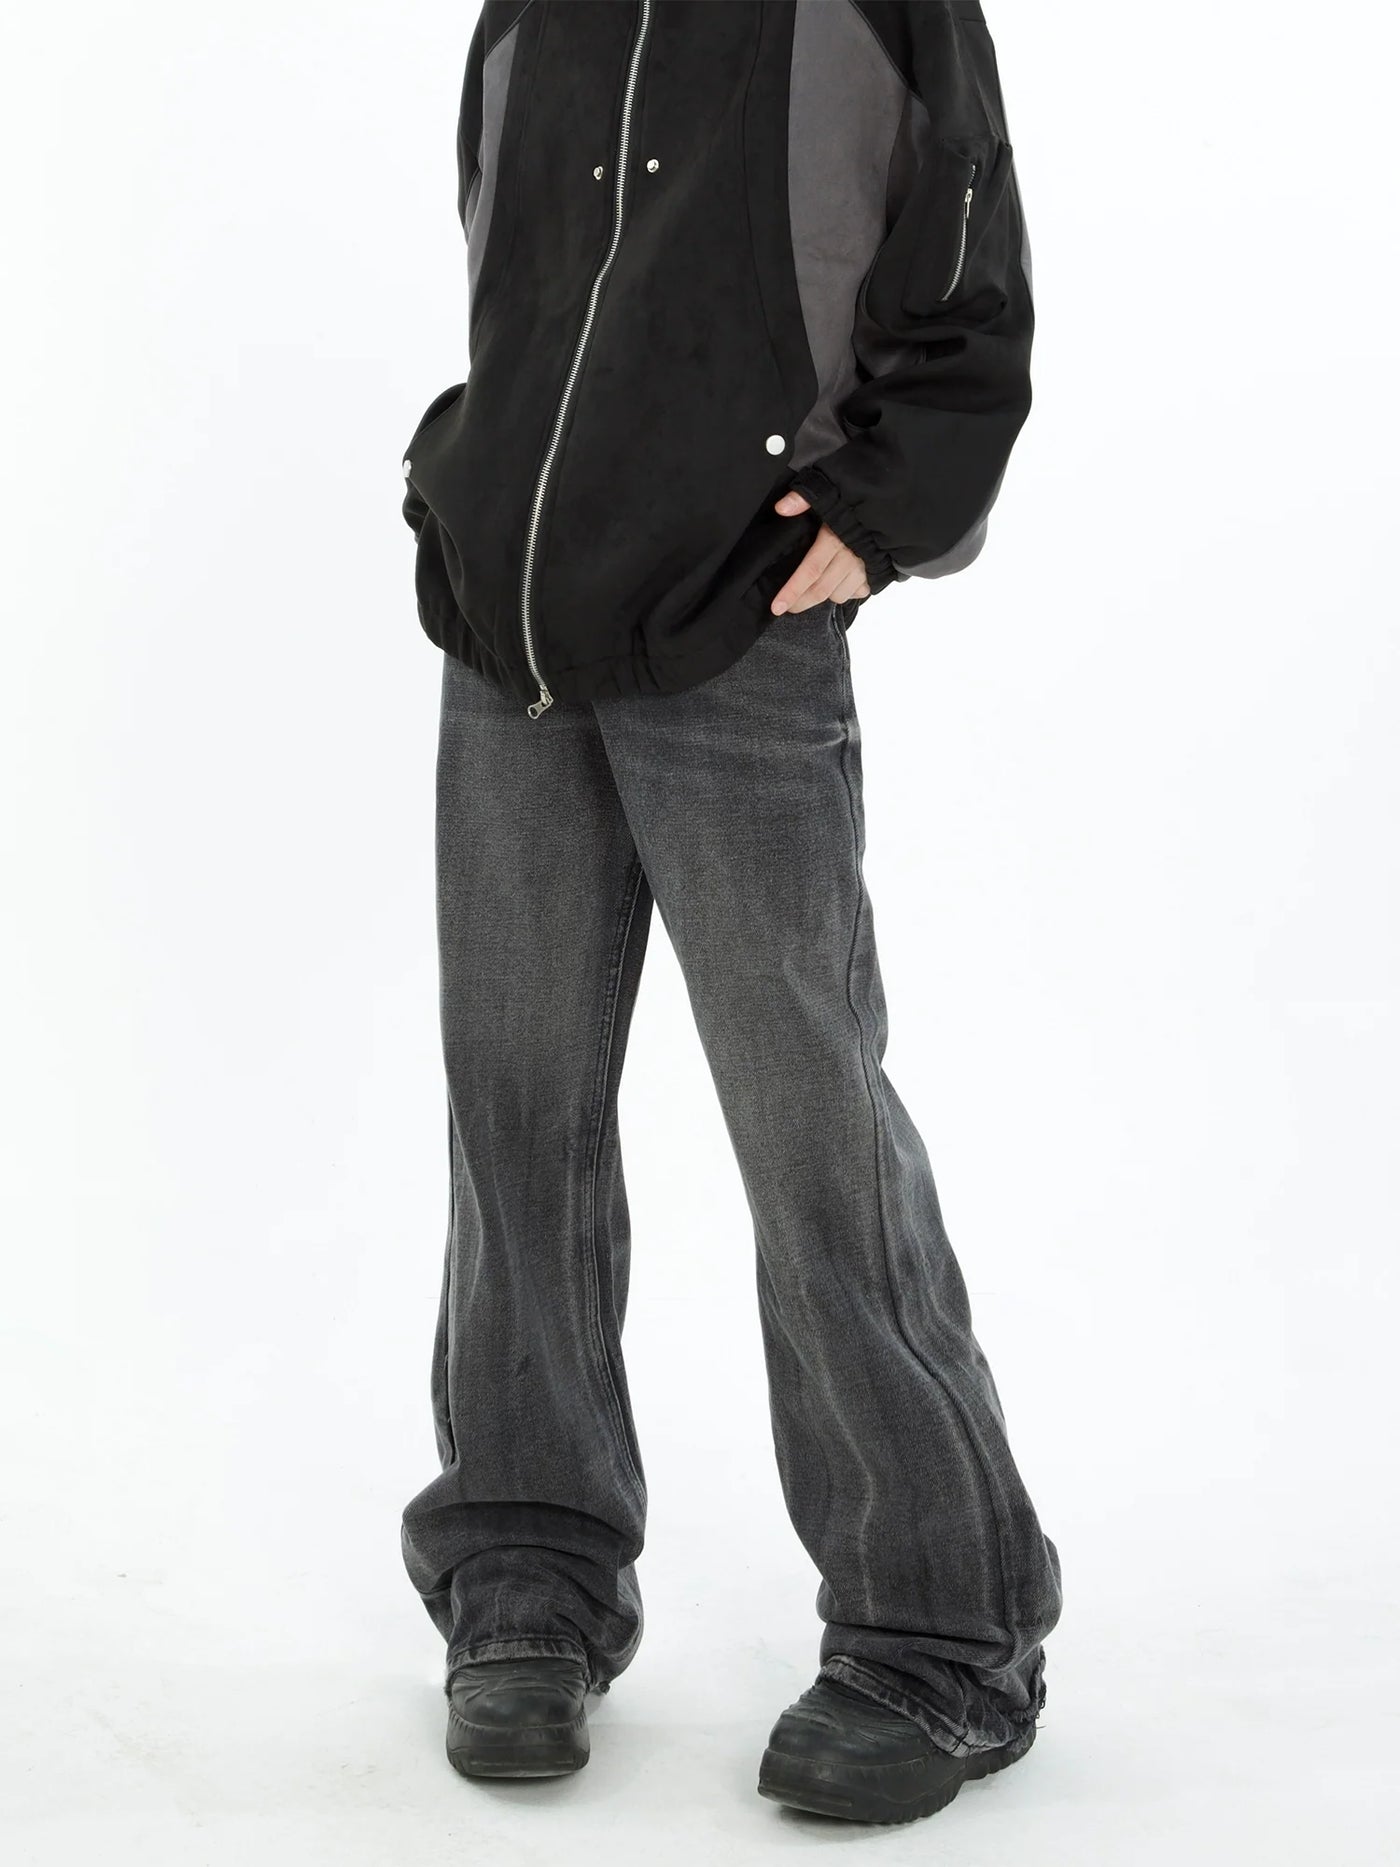 MaxDstr Whisker Lightning Pattern Flare Jeans Korean Street Fashion Jeans By MaxDstr Shop Online at OH Vault